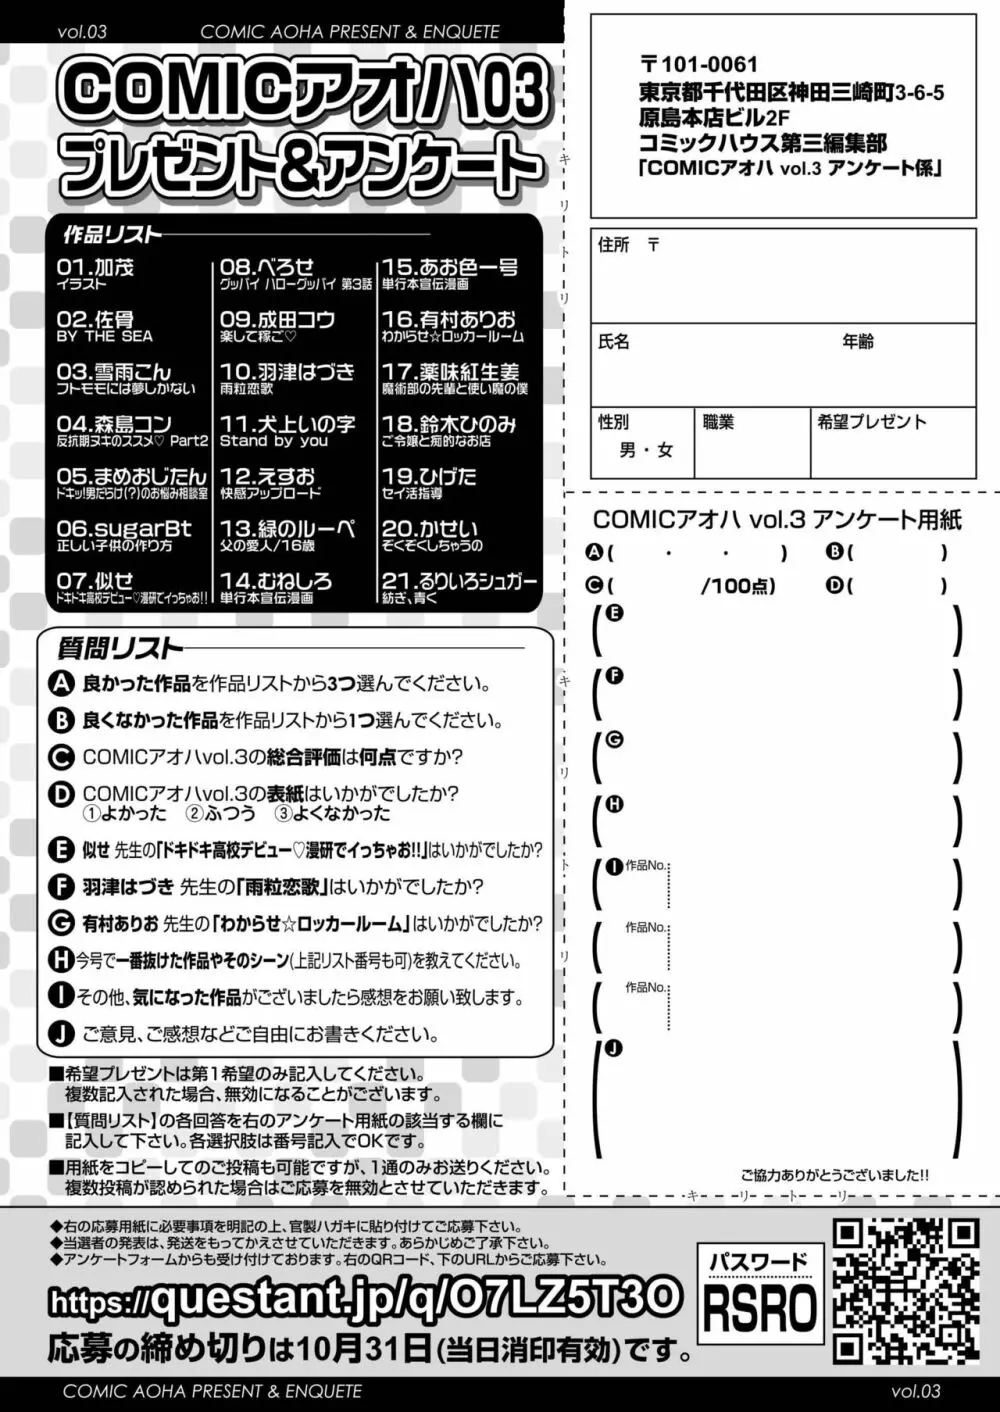 COMIC アオハ 2019 秋 482ページ